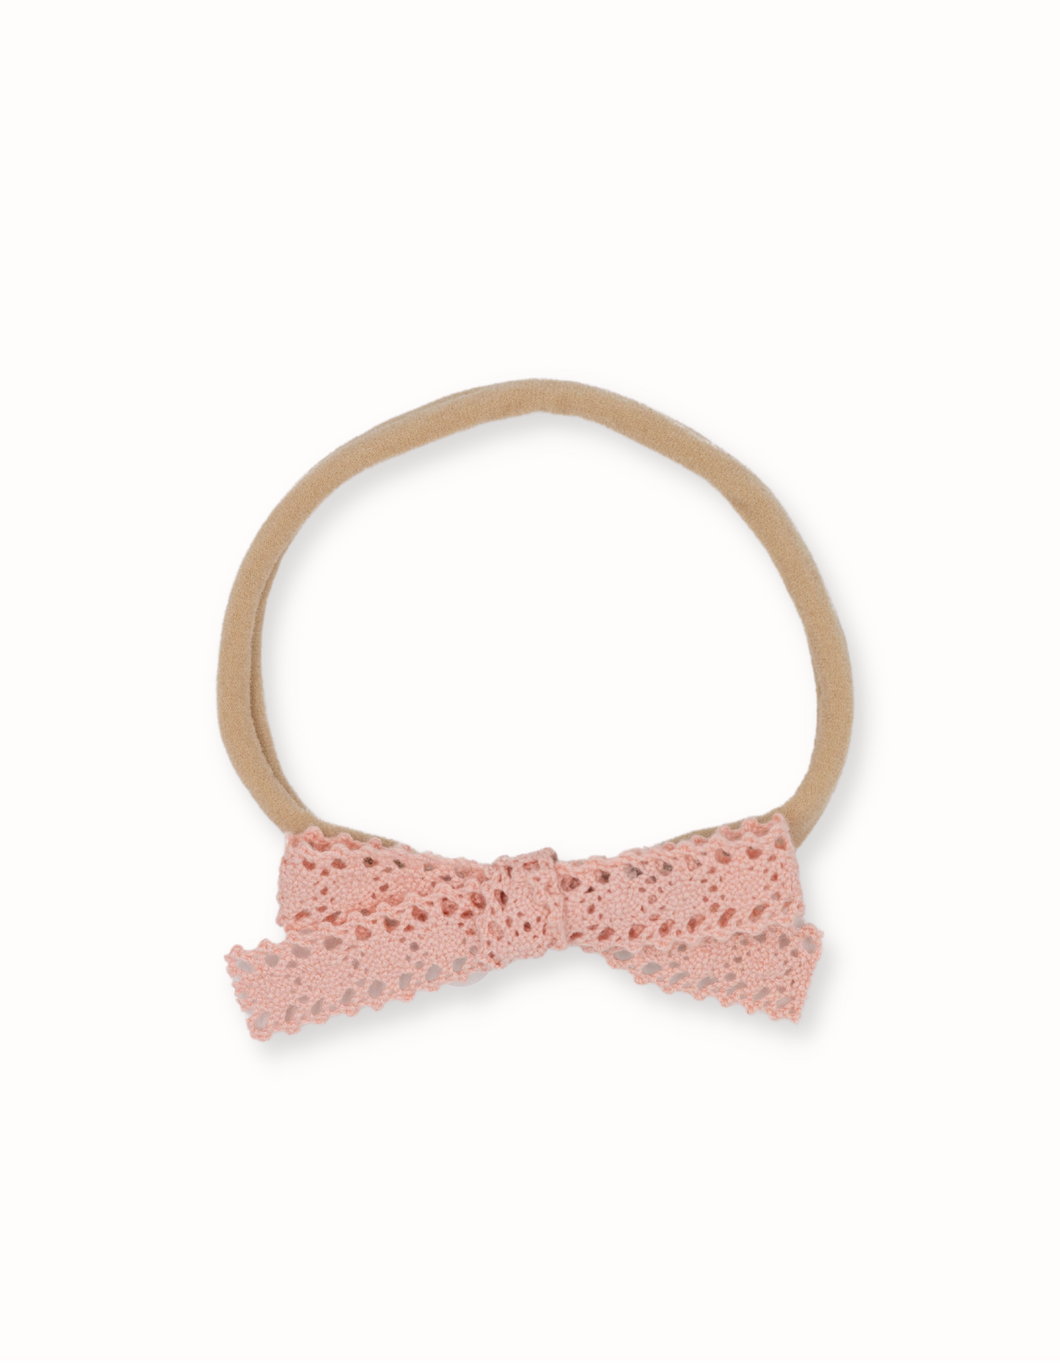 Hannah Crochet Baby Bow Headband